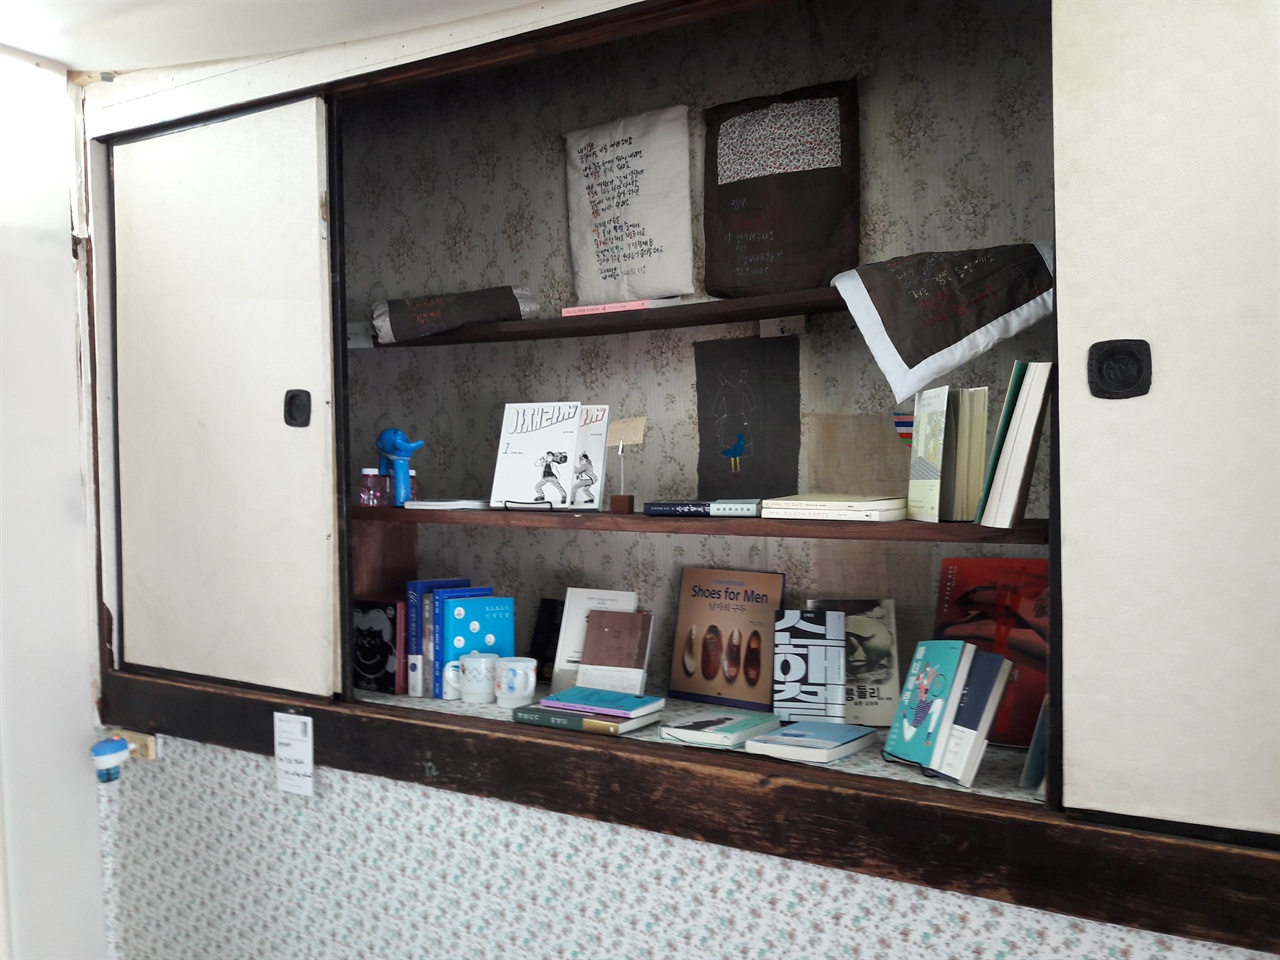 예전 시골집에는 벽장이 있었다. 벽장을 책장으로 바꾼 모습이 귀엽다. 책방 세간에는 커피와 간단한 차를 마실 수 있는 공간이 따로 마련되어 있다